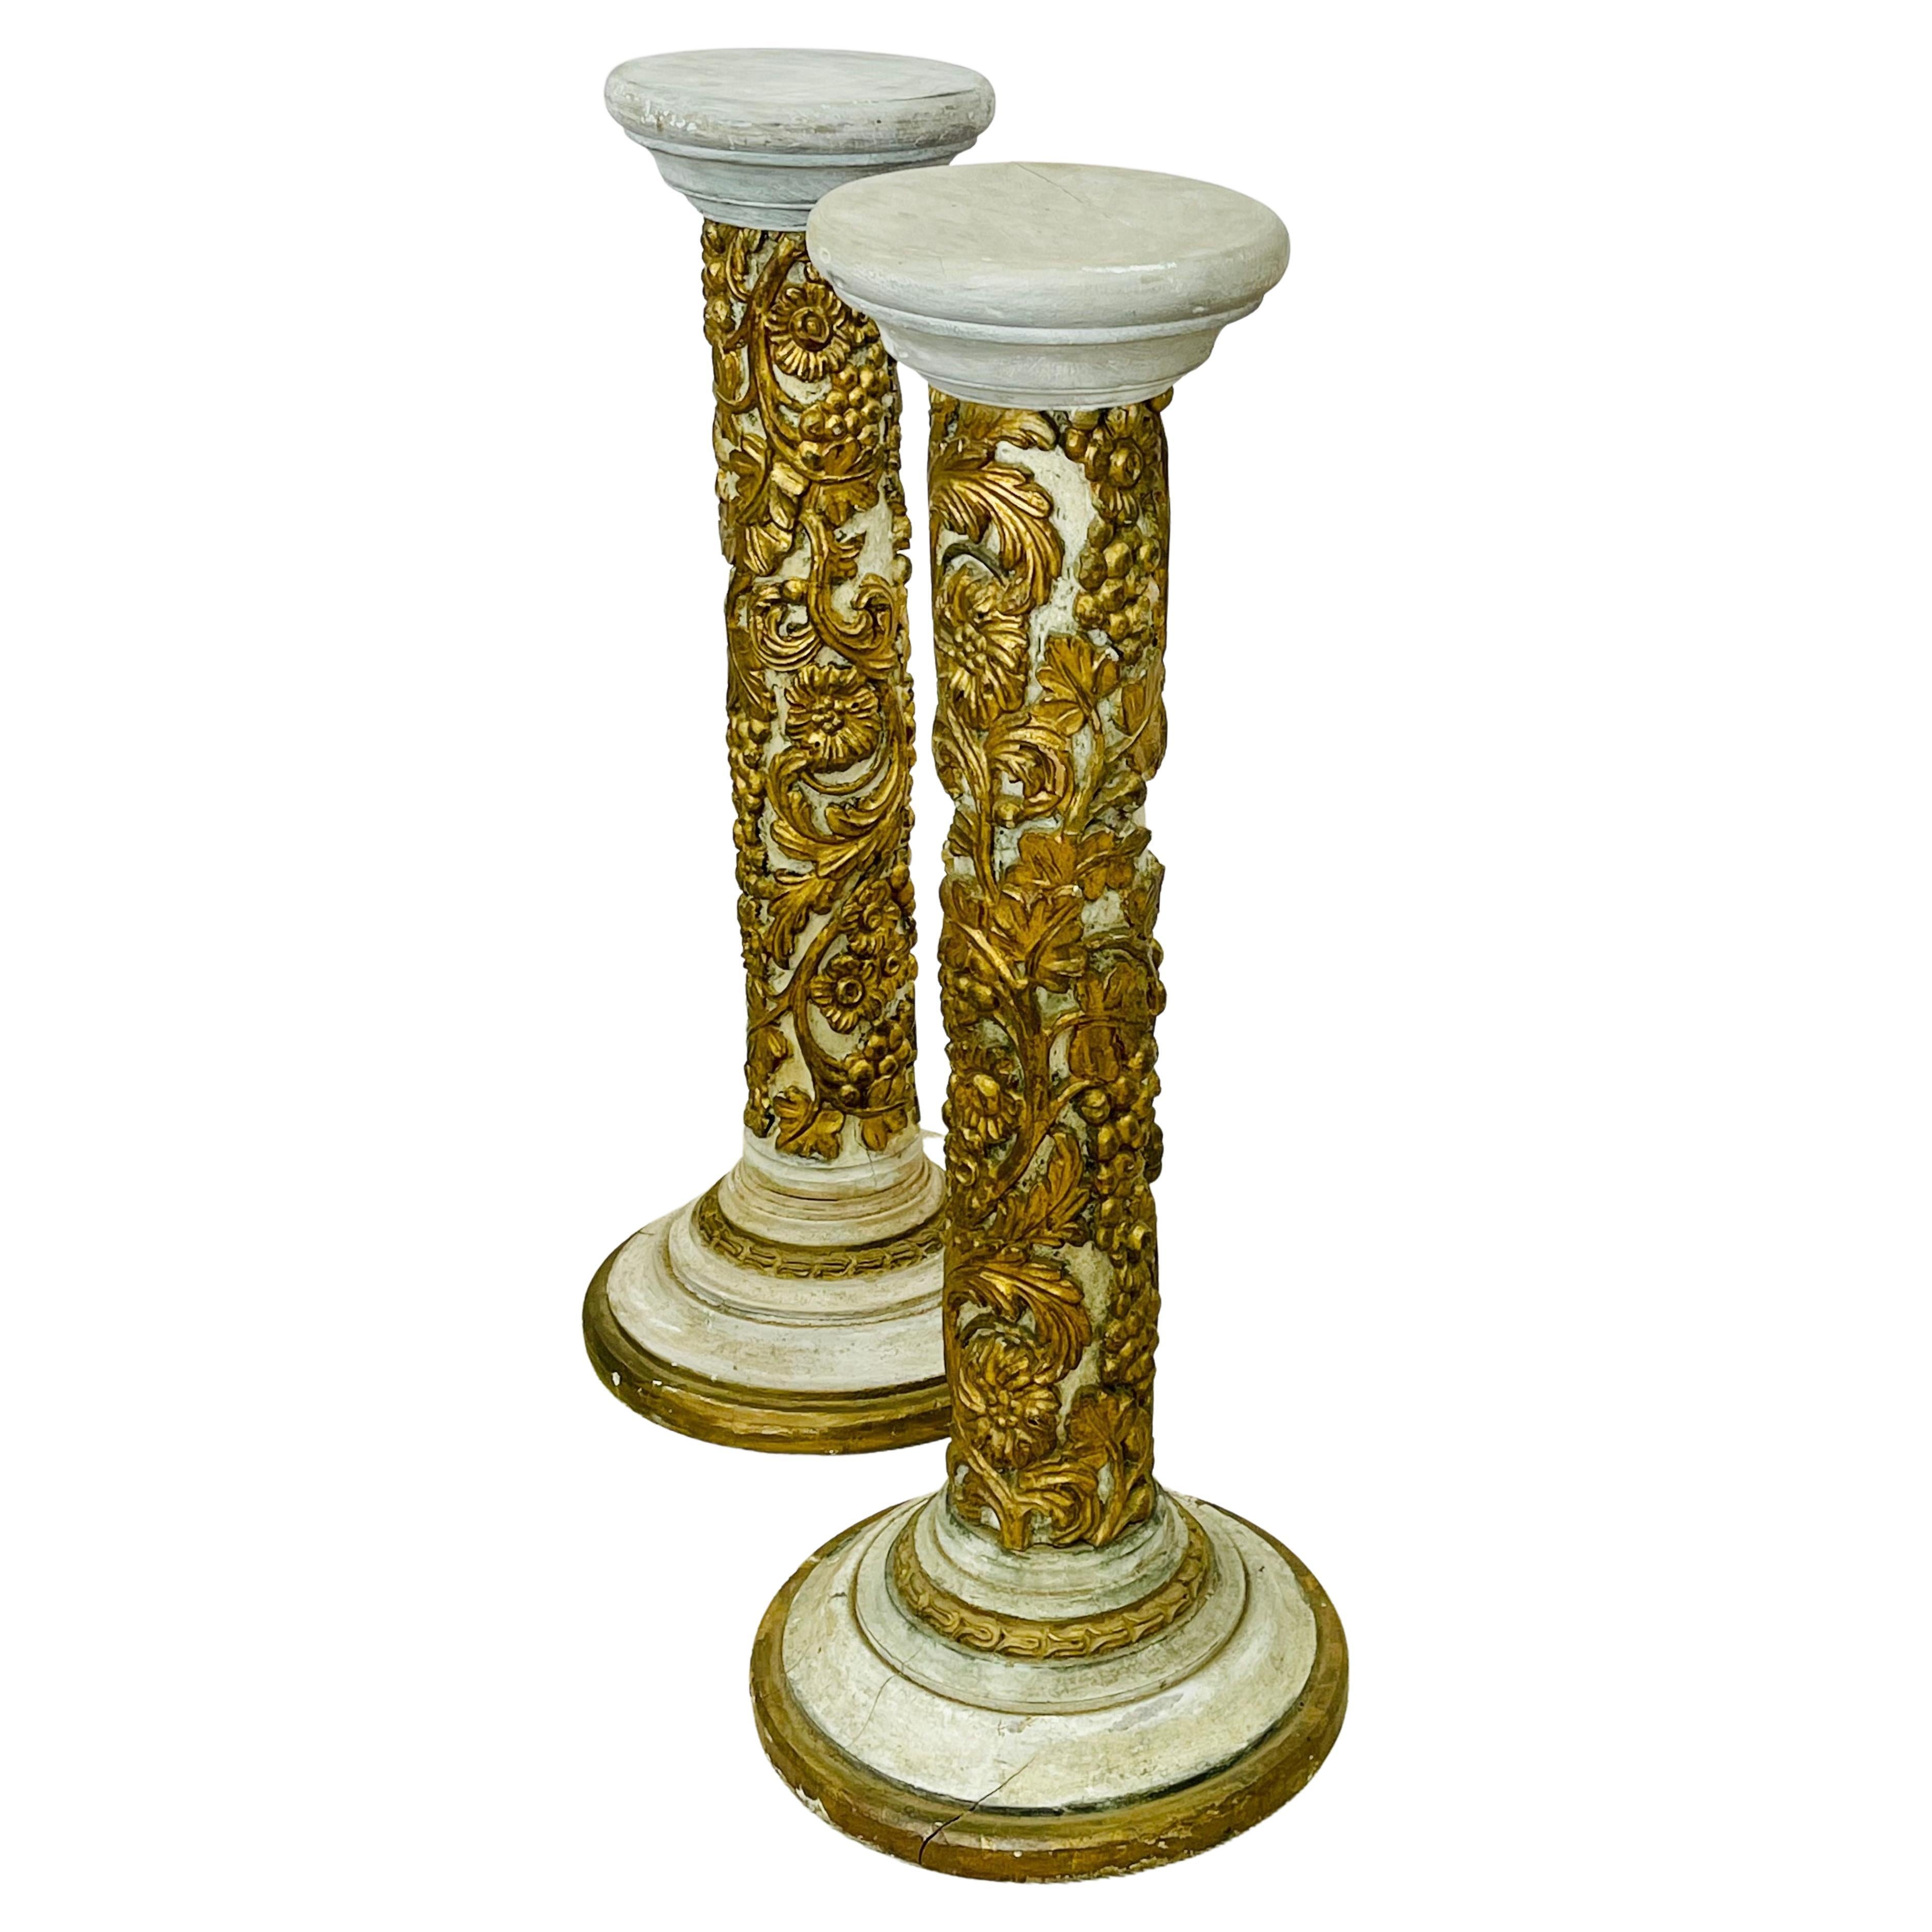 Paire de colonnes italiennes en bois doré et peint décorées, piédestaux, style gustavien